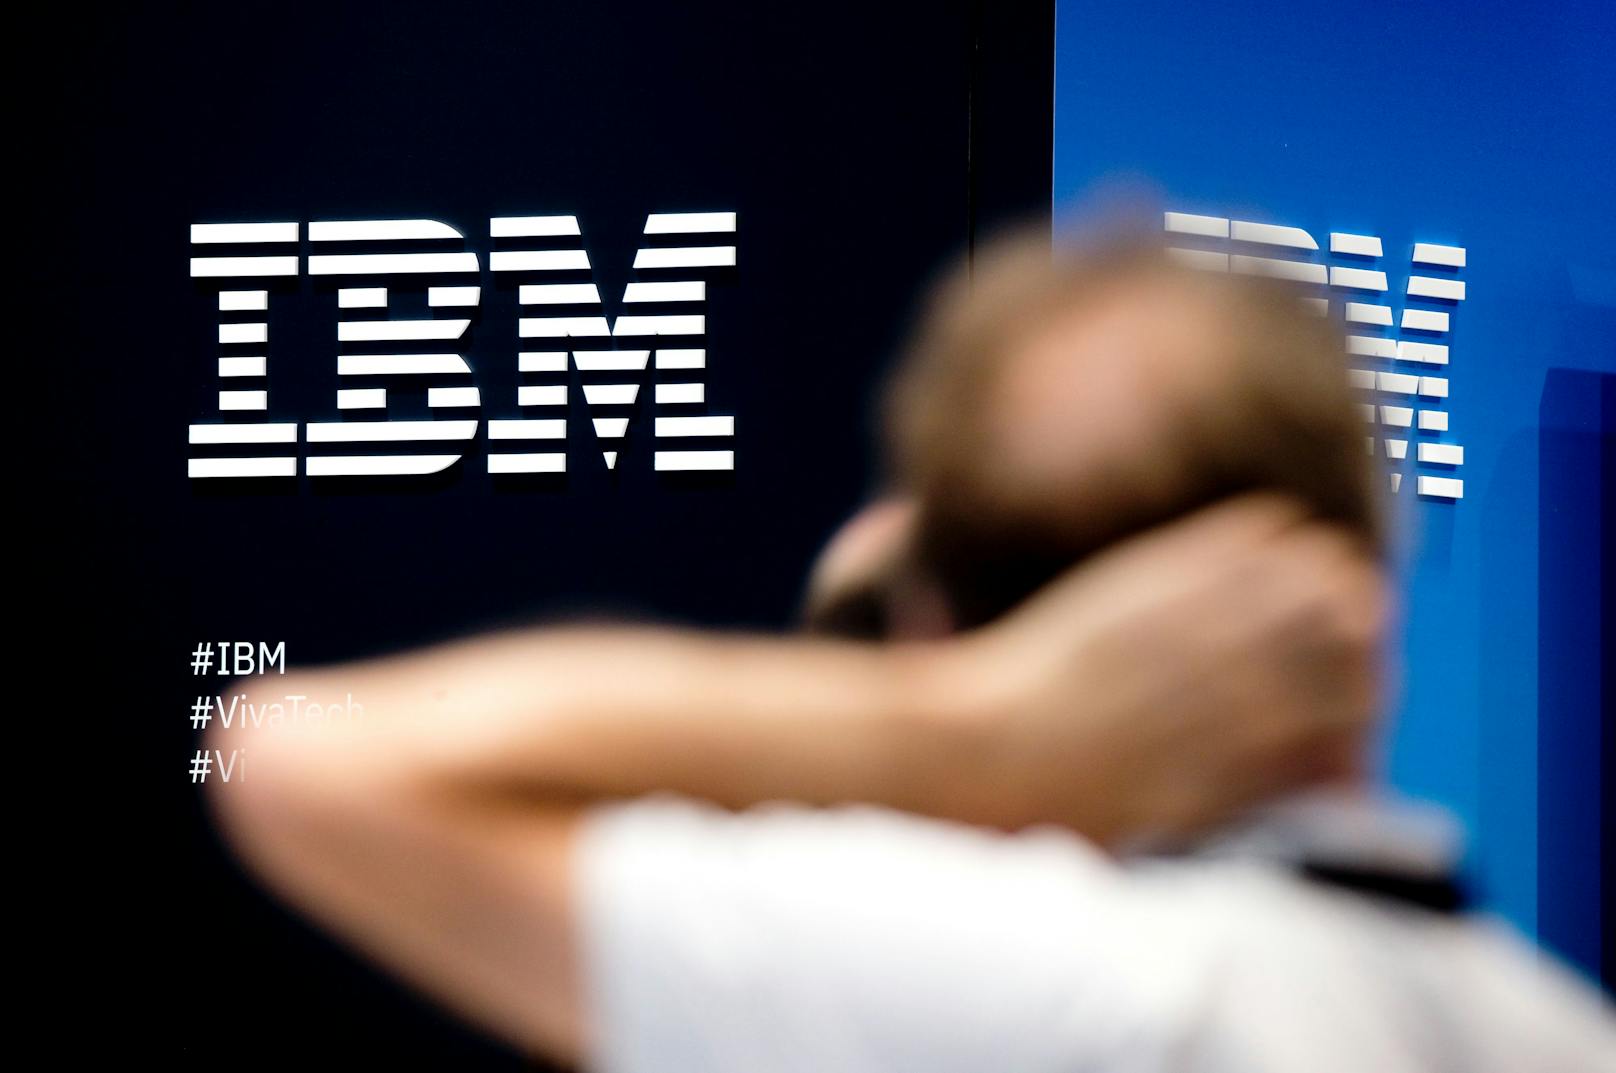 Tech-Riese IBM erwartet Einstellungsstopp wegen KI